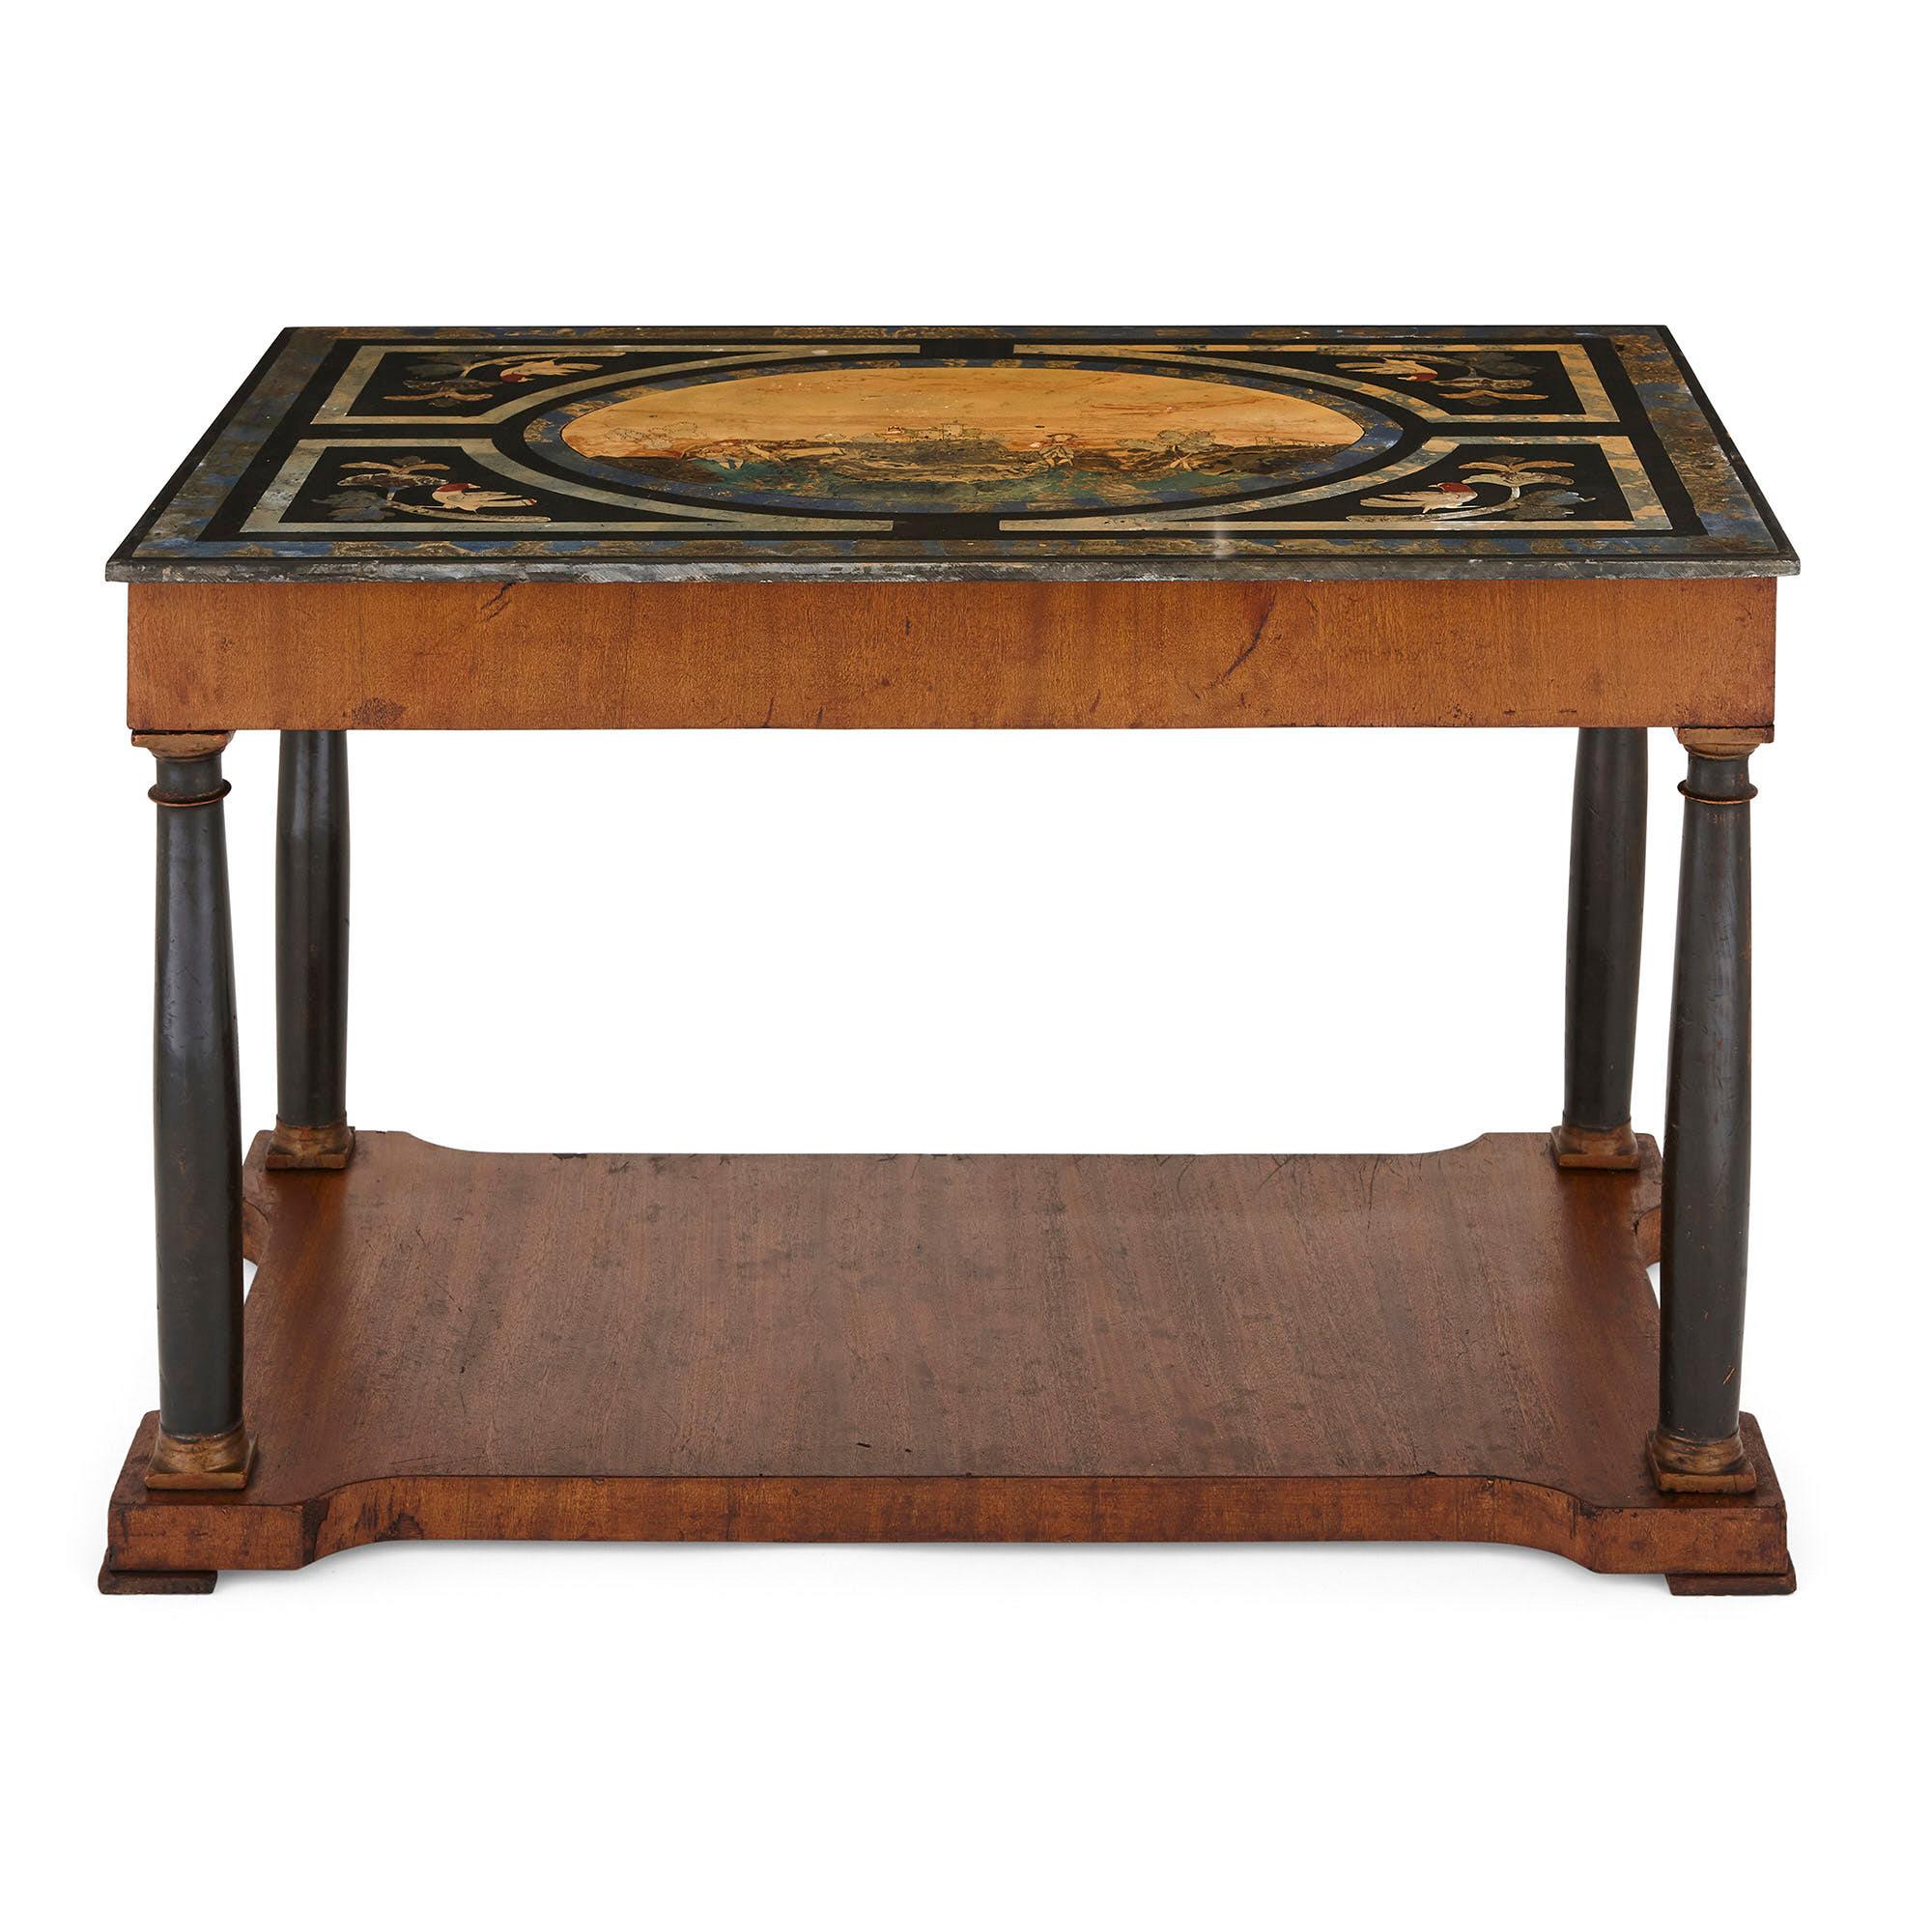 Cette table basse est un magnifique meuble italien, avec un plateau en scagliola. La scagliola est un matériau constitué d'une combinaison de plâtre, de pigments et de colle. Il est poli à la main pour obtenir une surface brillante et dure qui